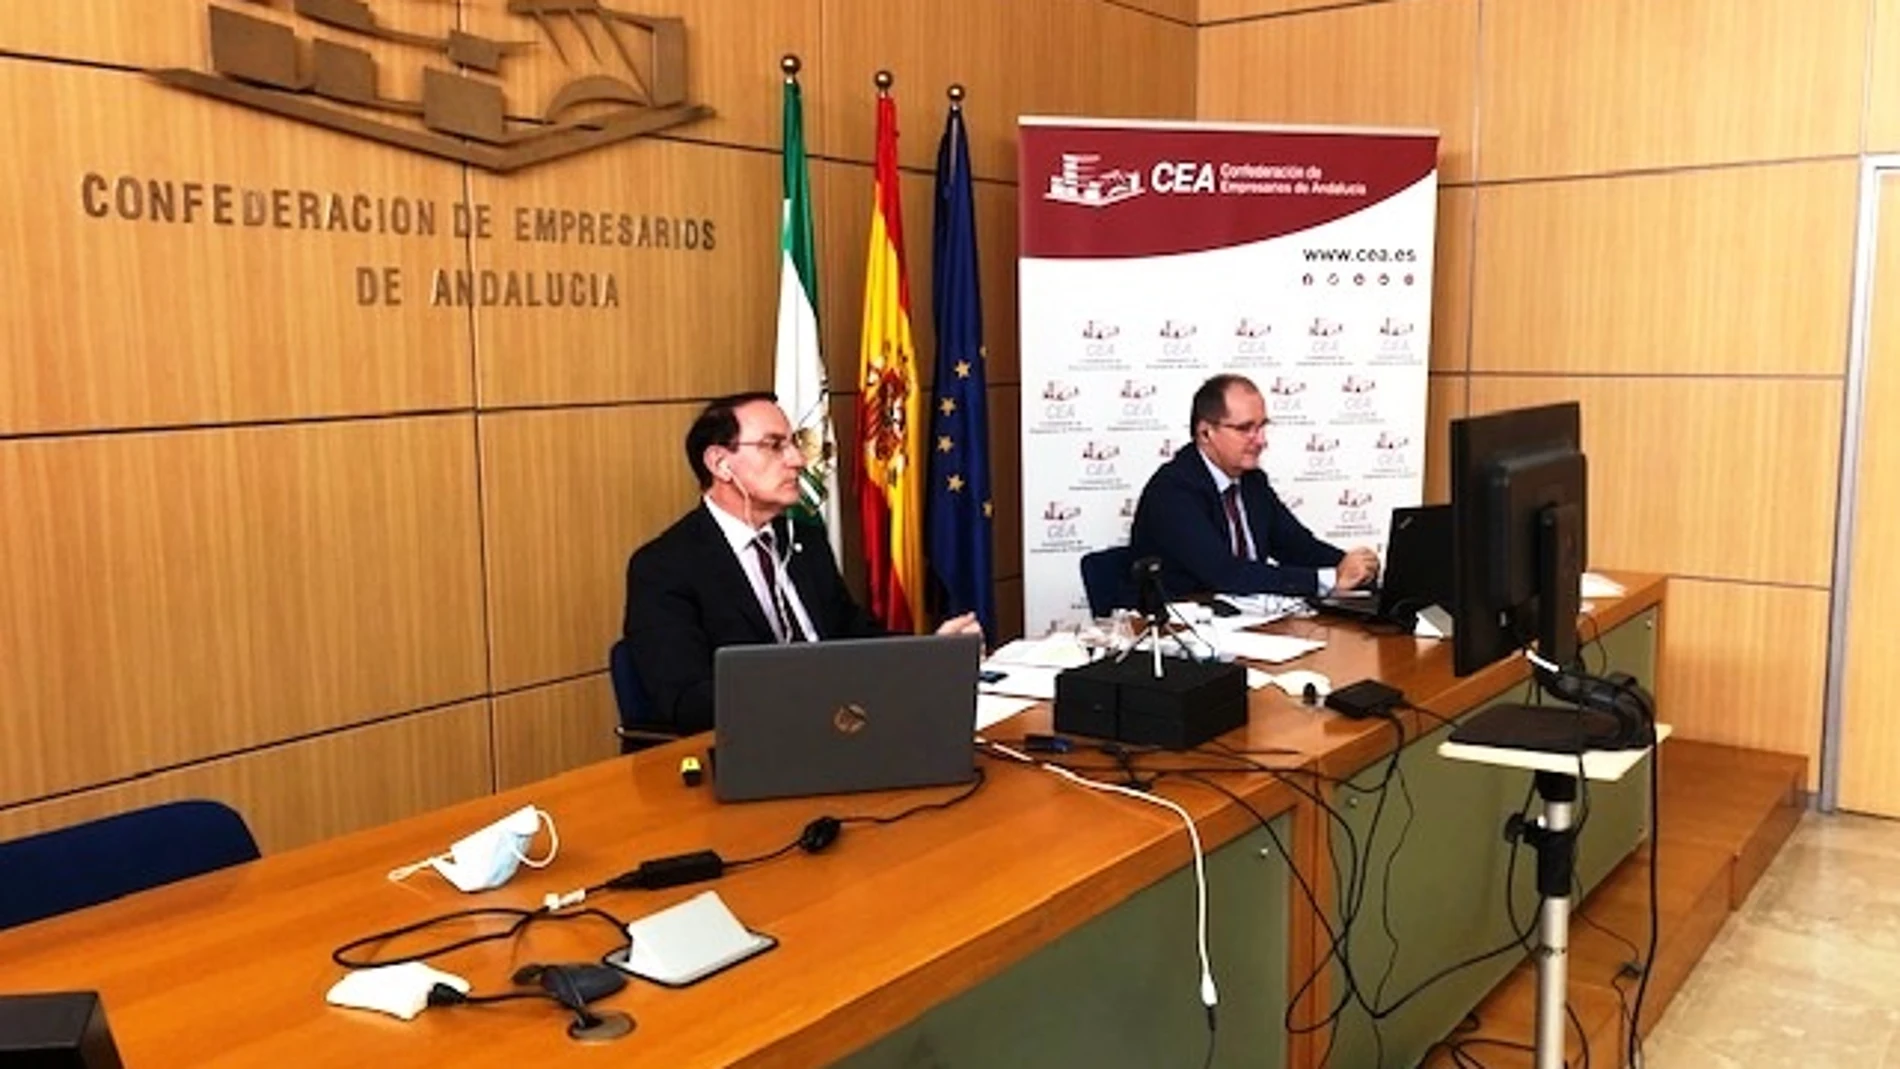 El presidente de la Confederación de Empresarios de Andalucía (CEA), Javier González de Lara, en una imagen de archivo